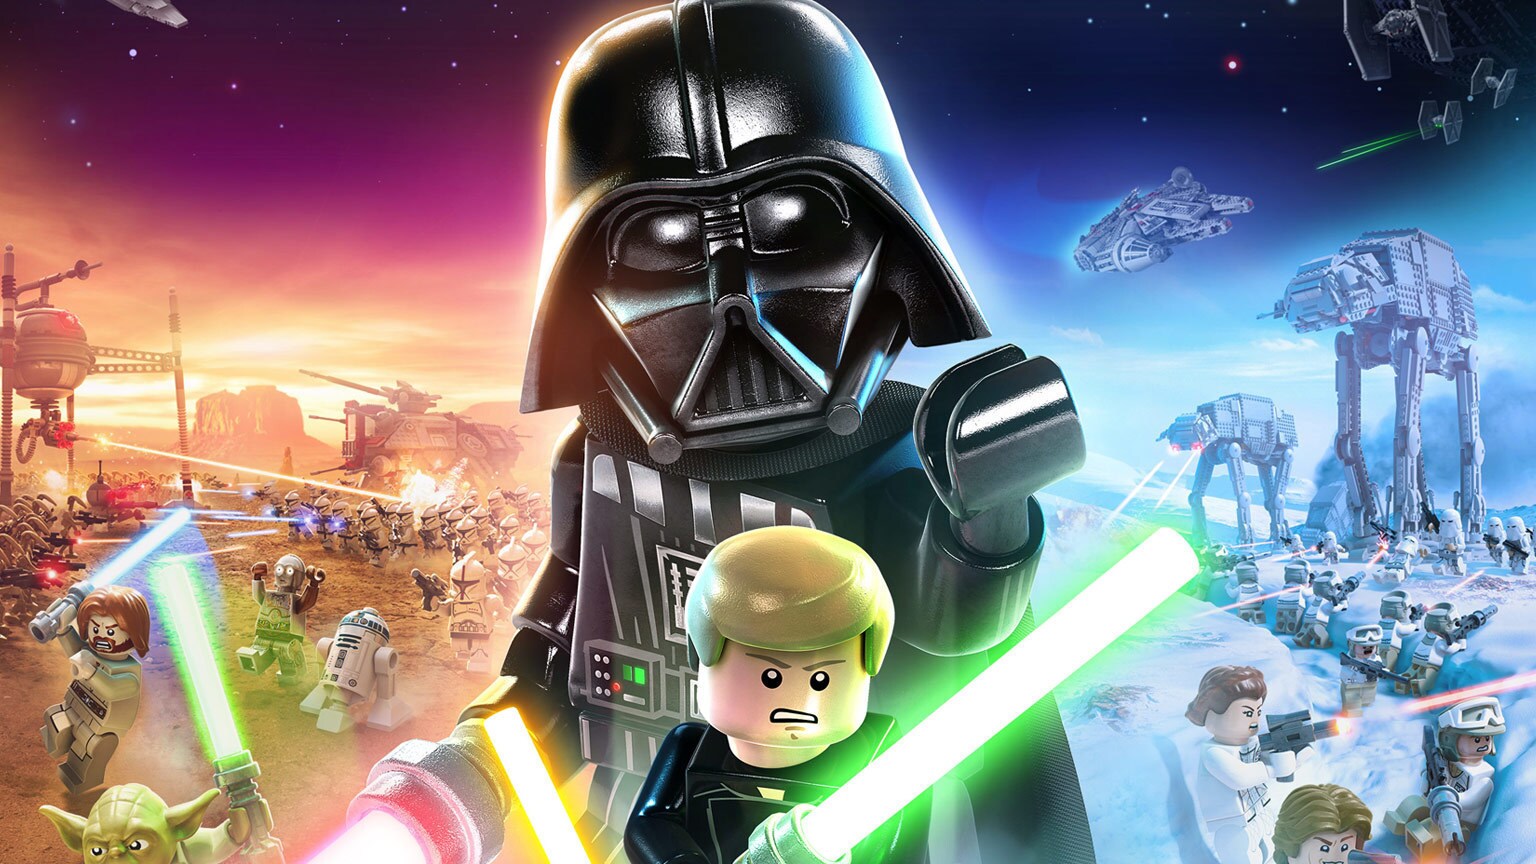 Does LEGO Star Wars: The Skywalker Saga have online multiplayer?